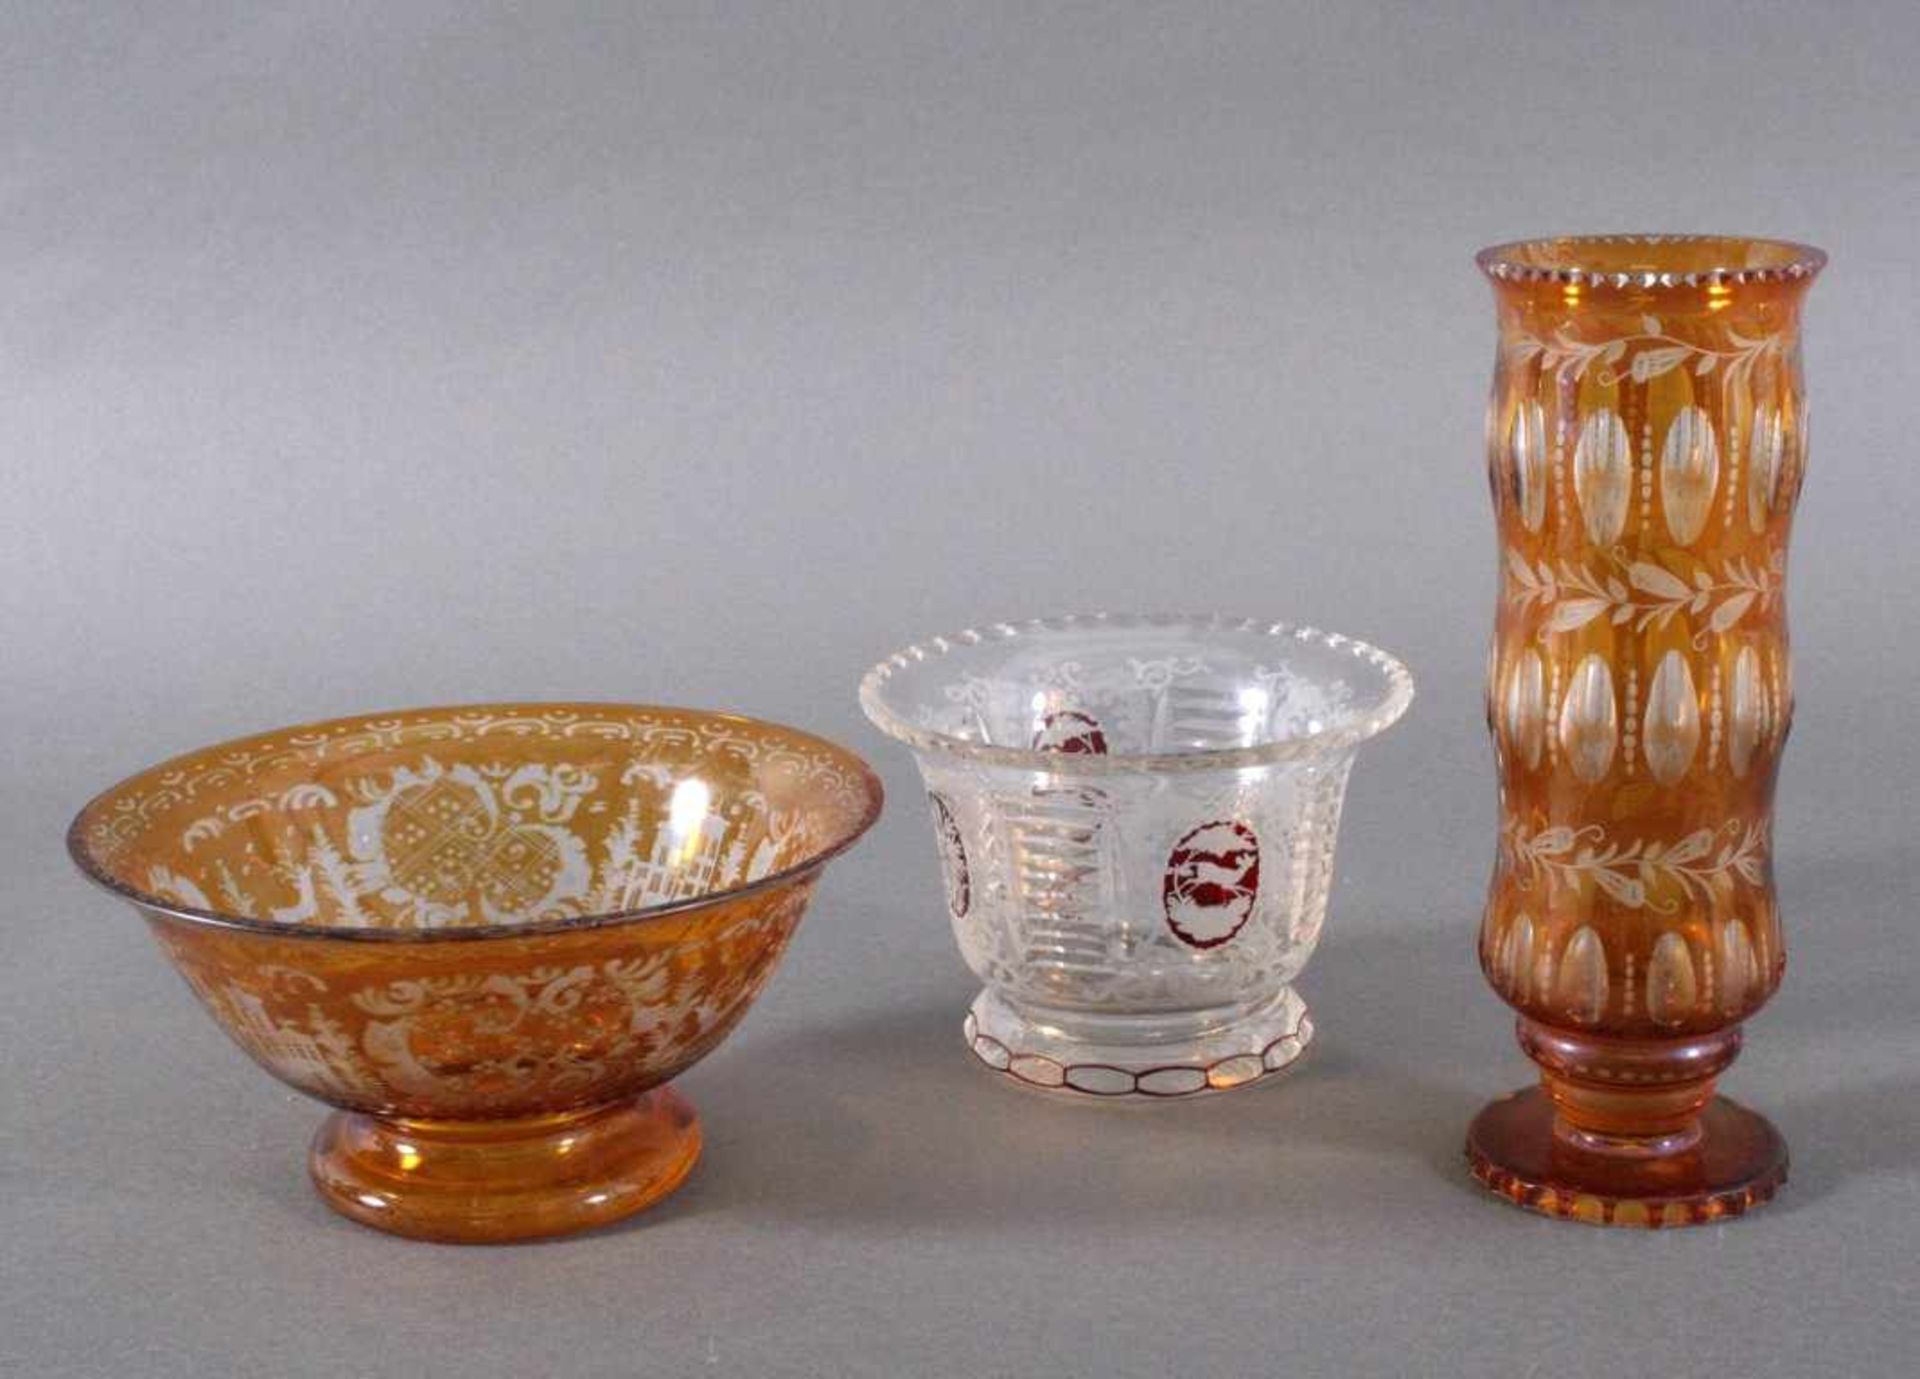 3 Teile Glas1 Anbietschale, runde Form mit umlaufender Gravur, ca. Höhe12, D. 16 cm.1 Vase und